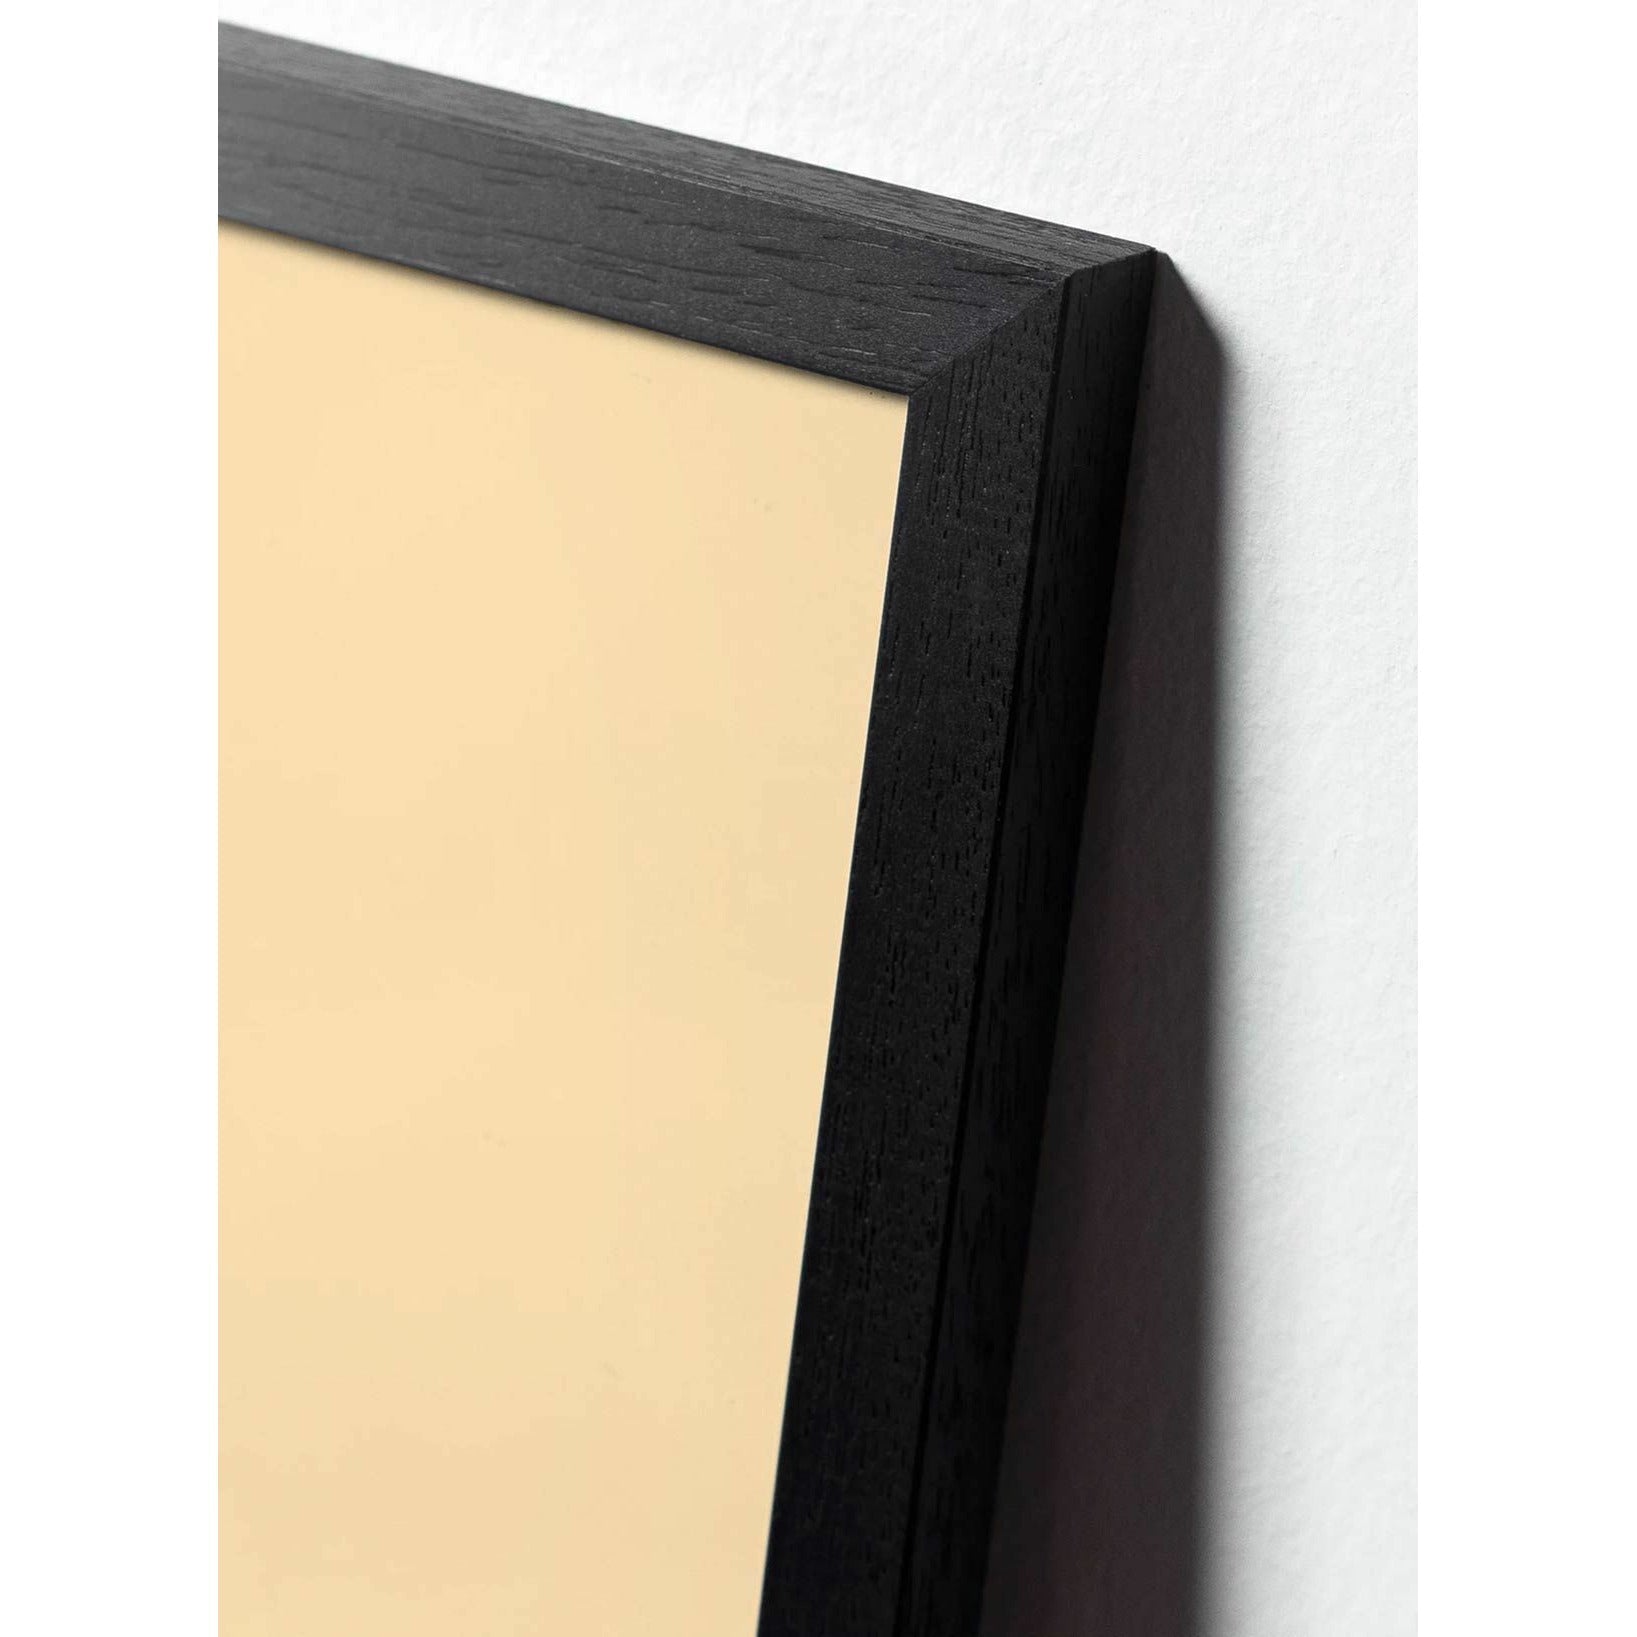 Brainchild Ant Design Icon -juliste, kehys, joka on valmistettu mustasta lakatusta puusta 50x70 cm, keltainen